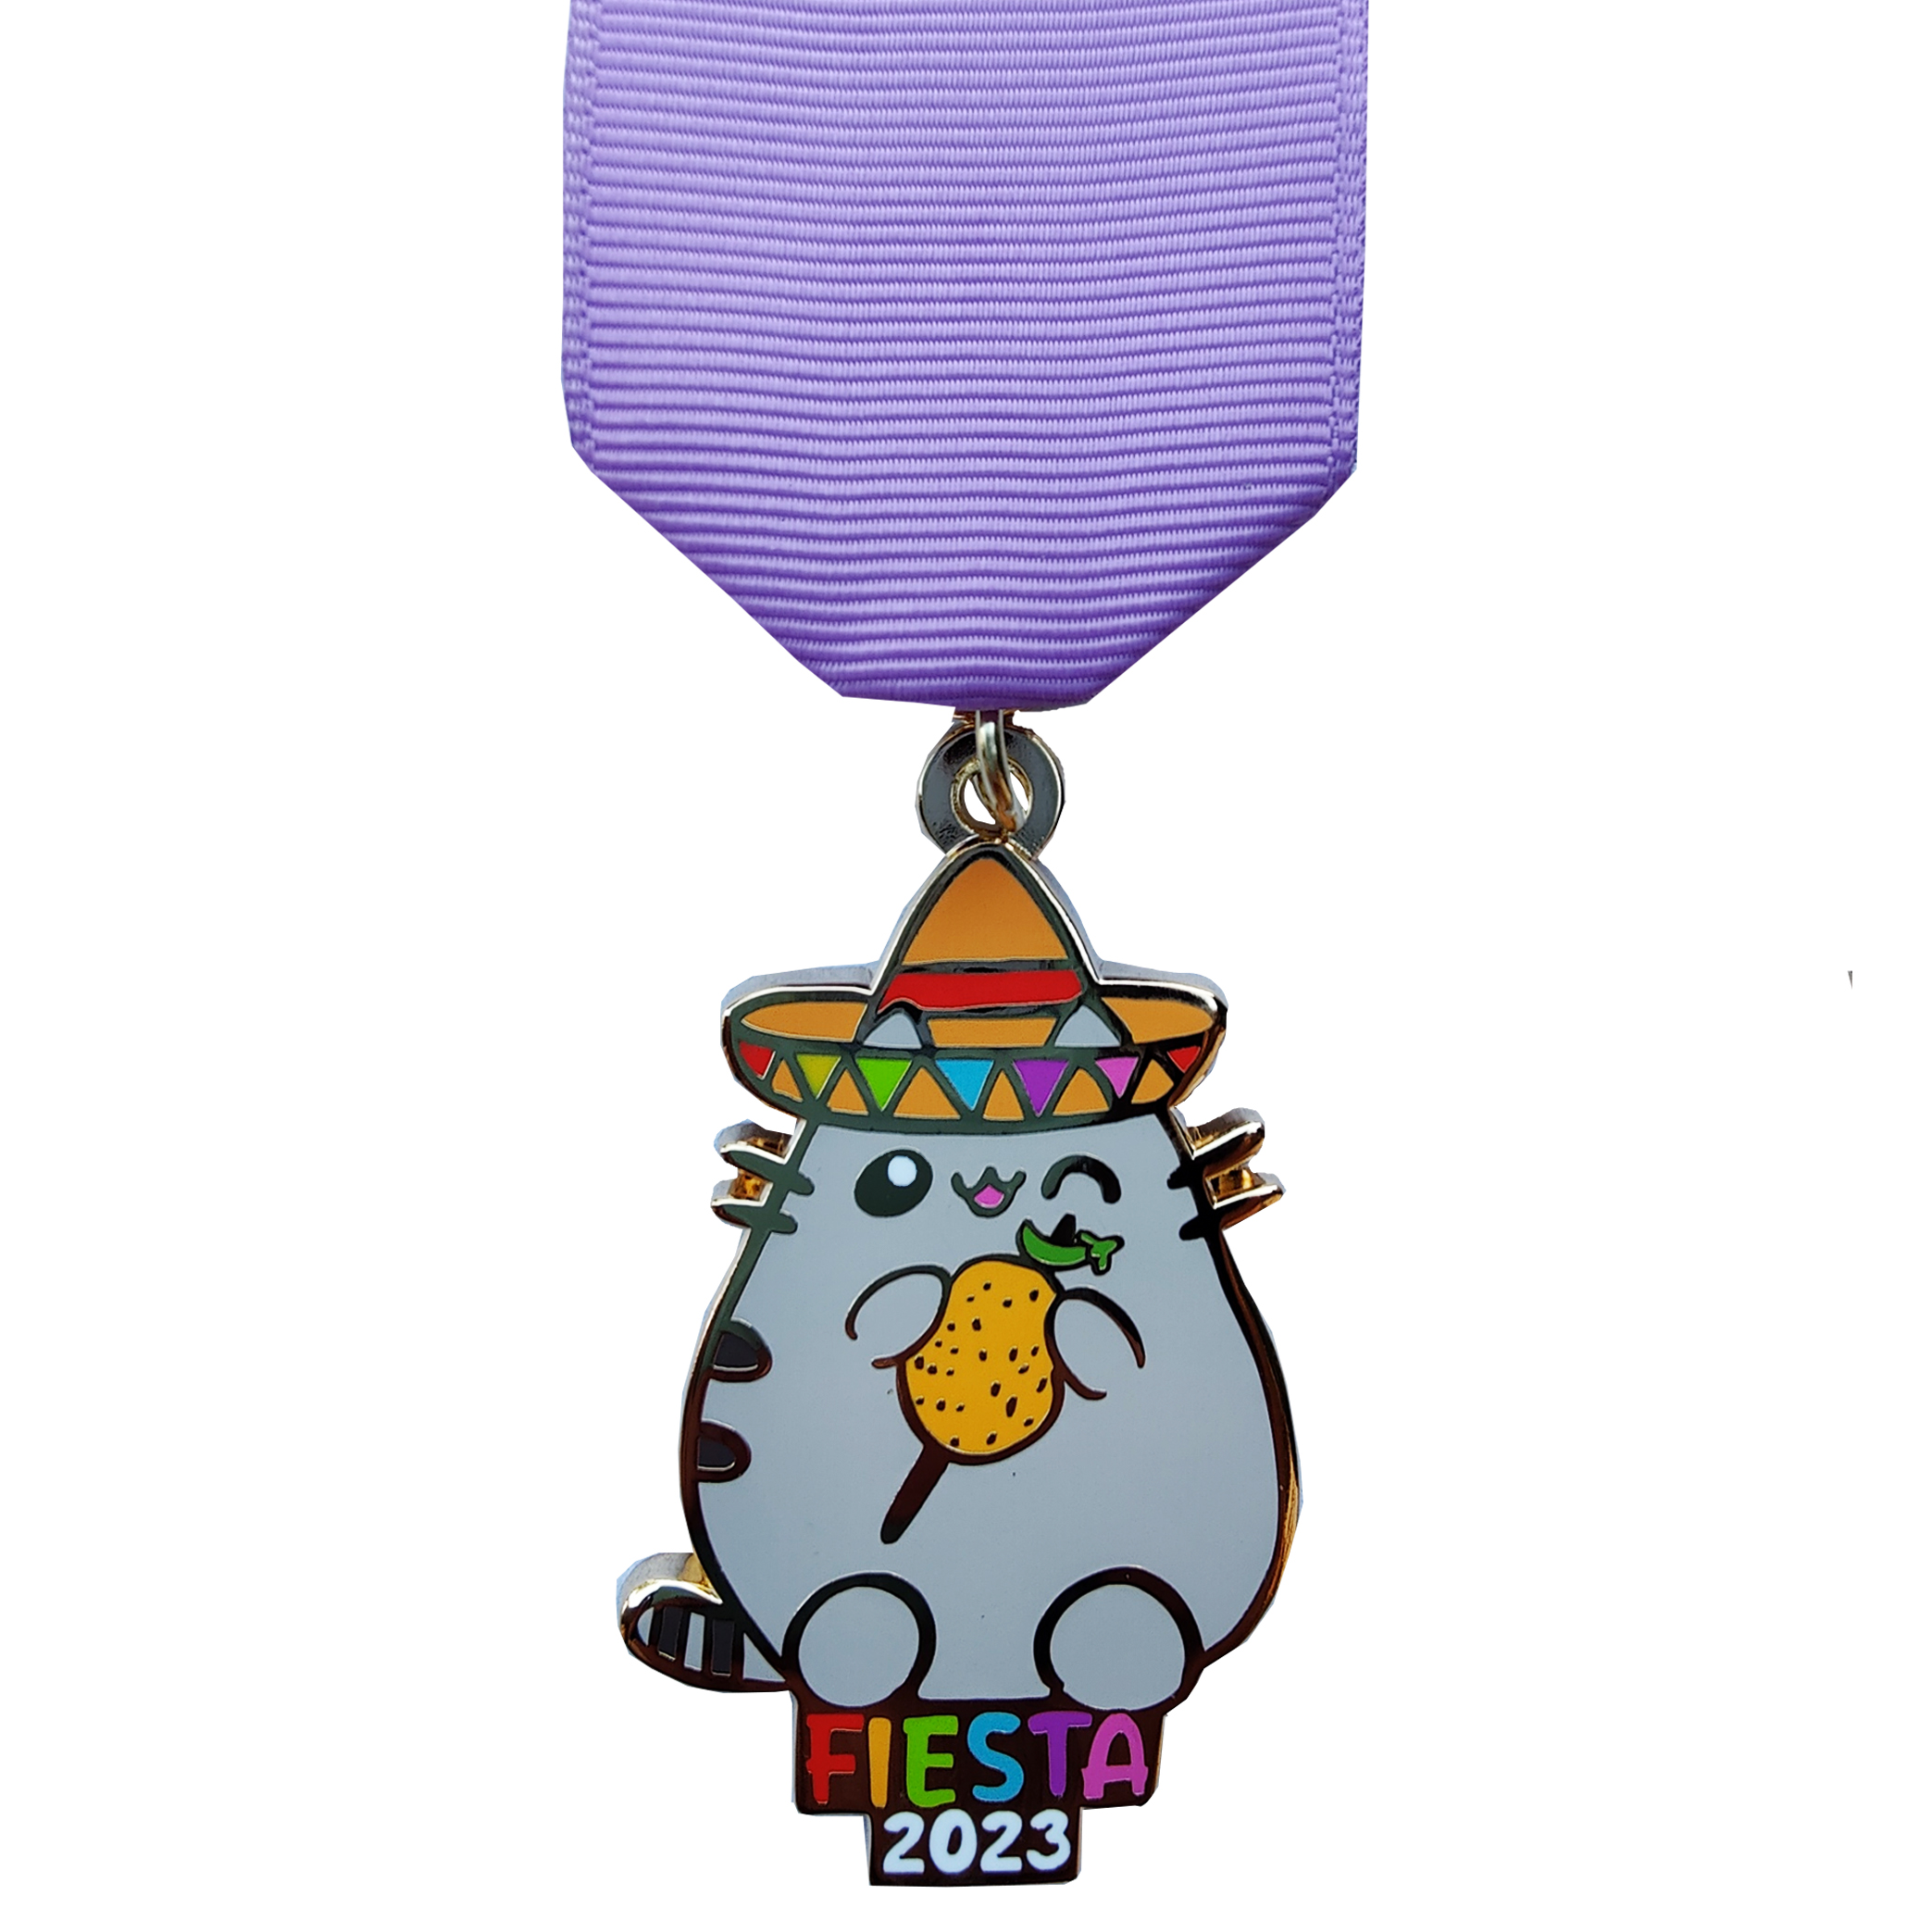 2023 pusheen cat fiesta medal